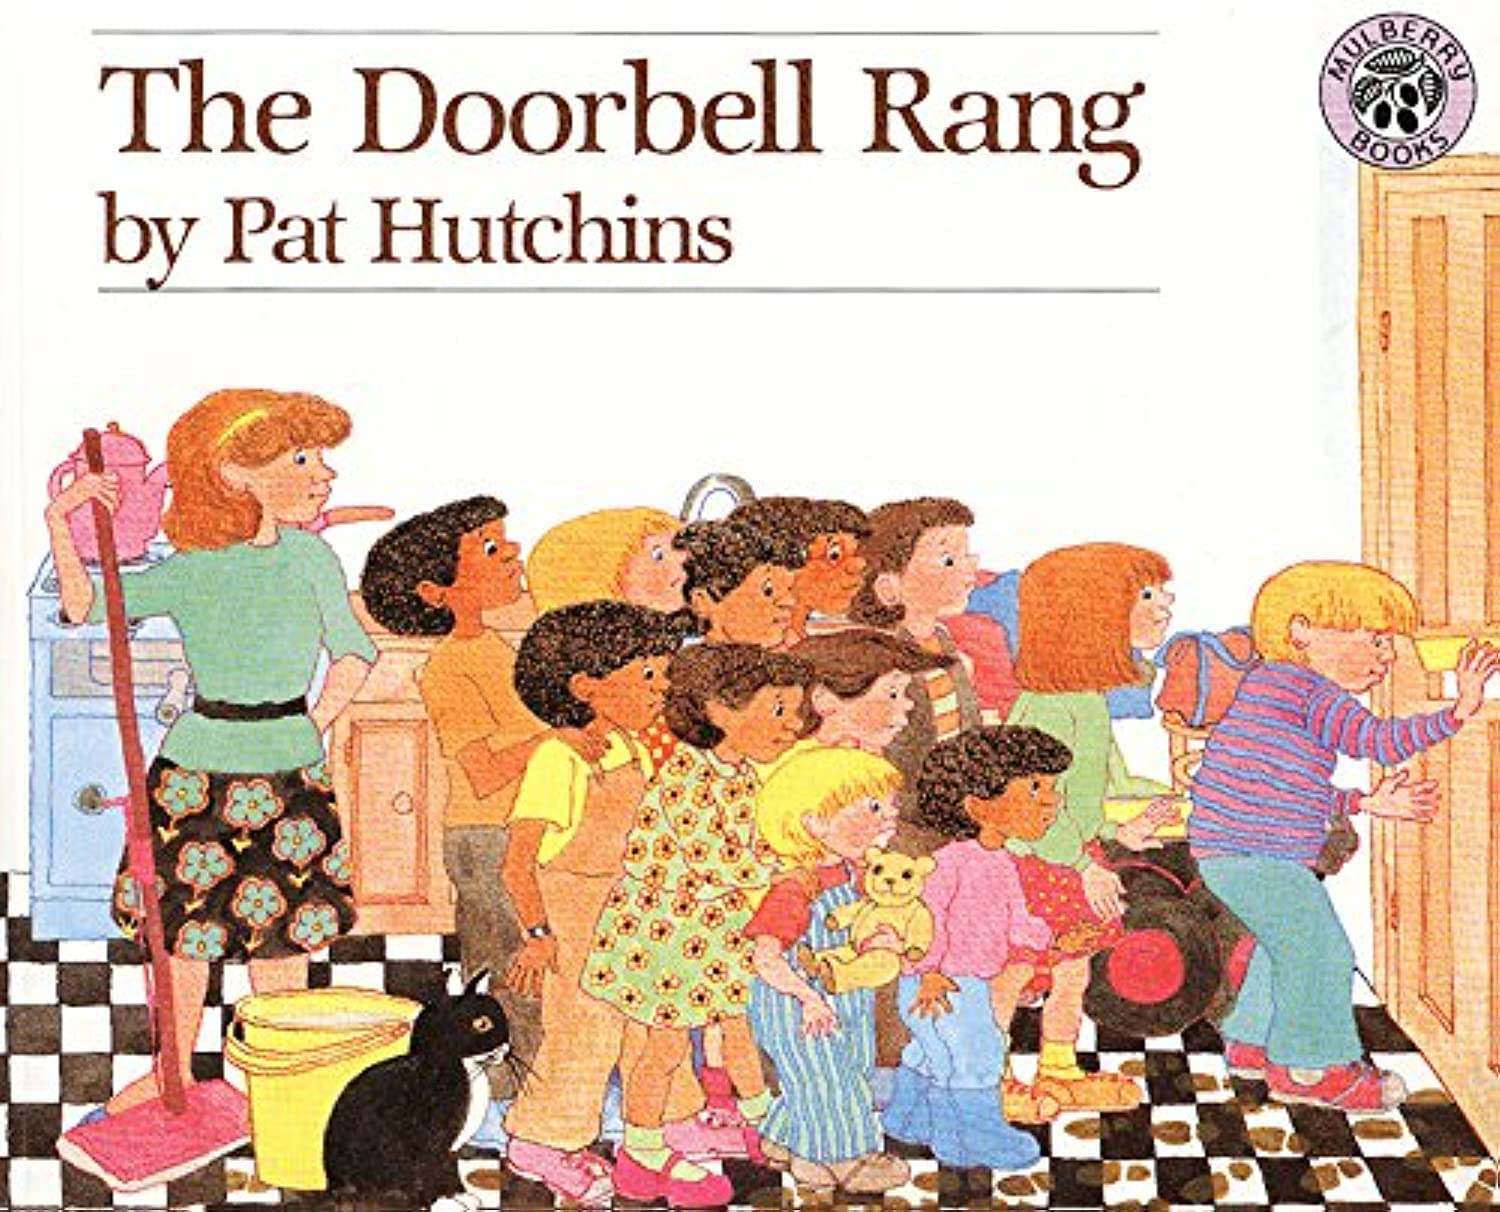 The Doorbell Rang by Pat Hutchins